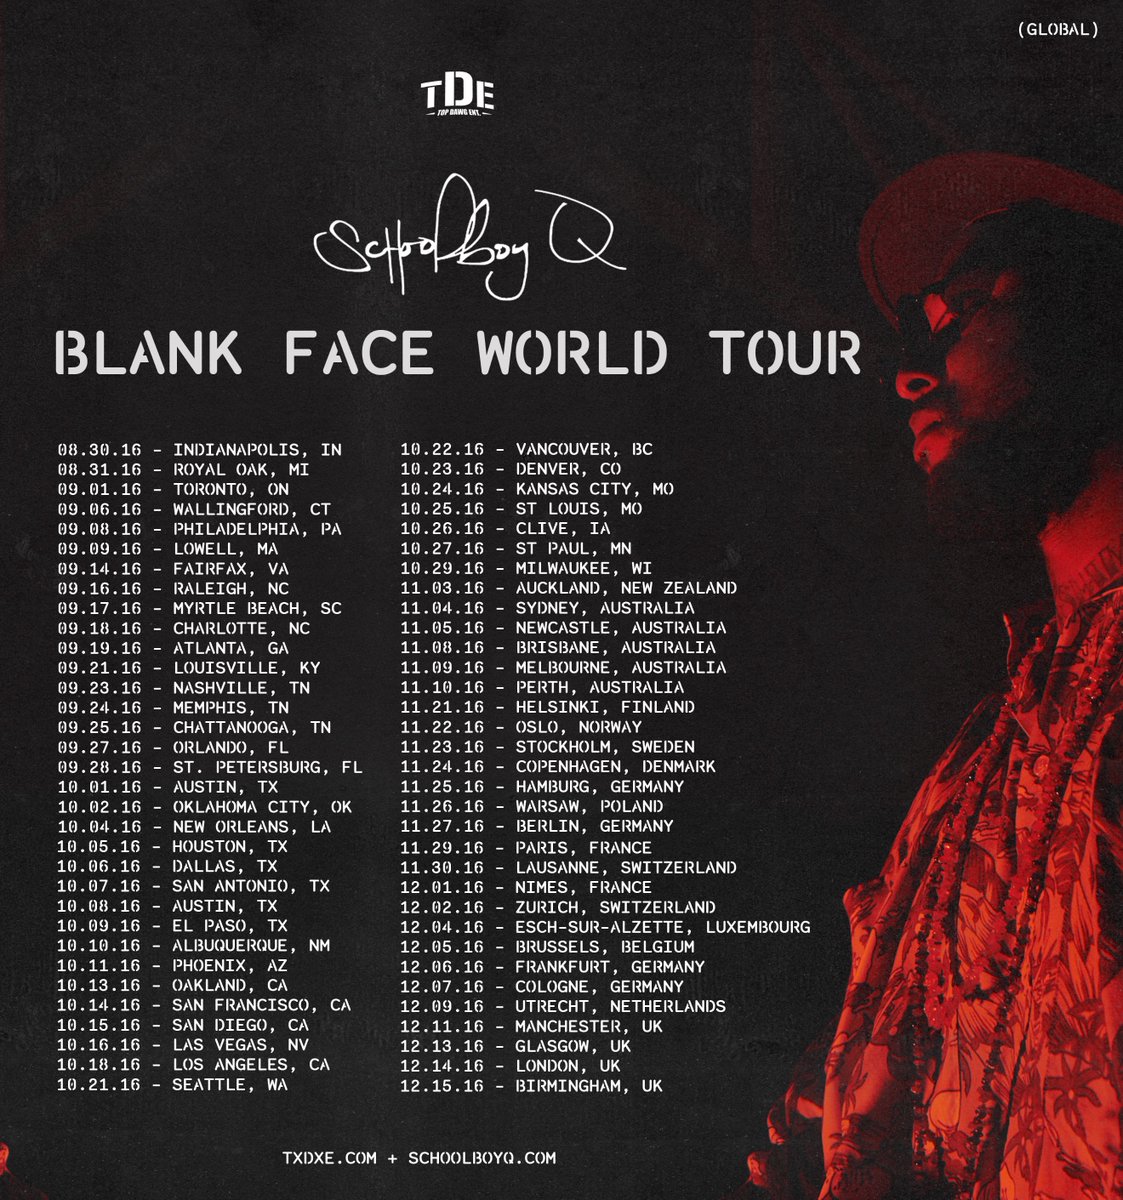 ScHoolboy Q Announces the ‘Blank Face World Tour’